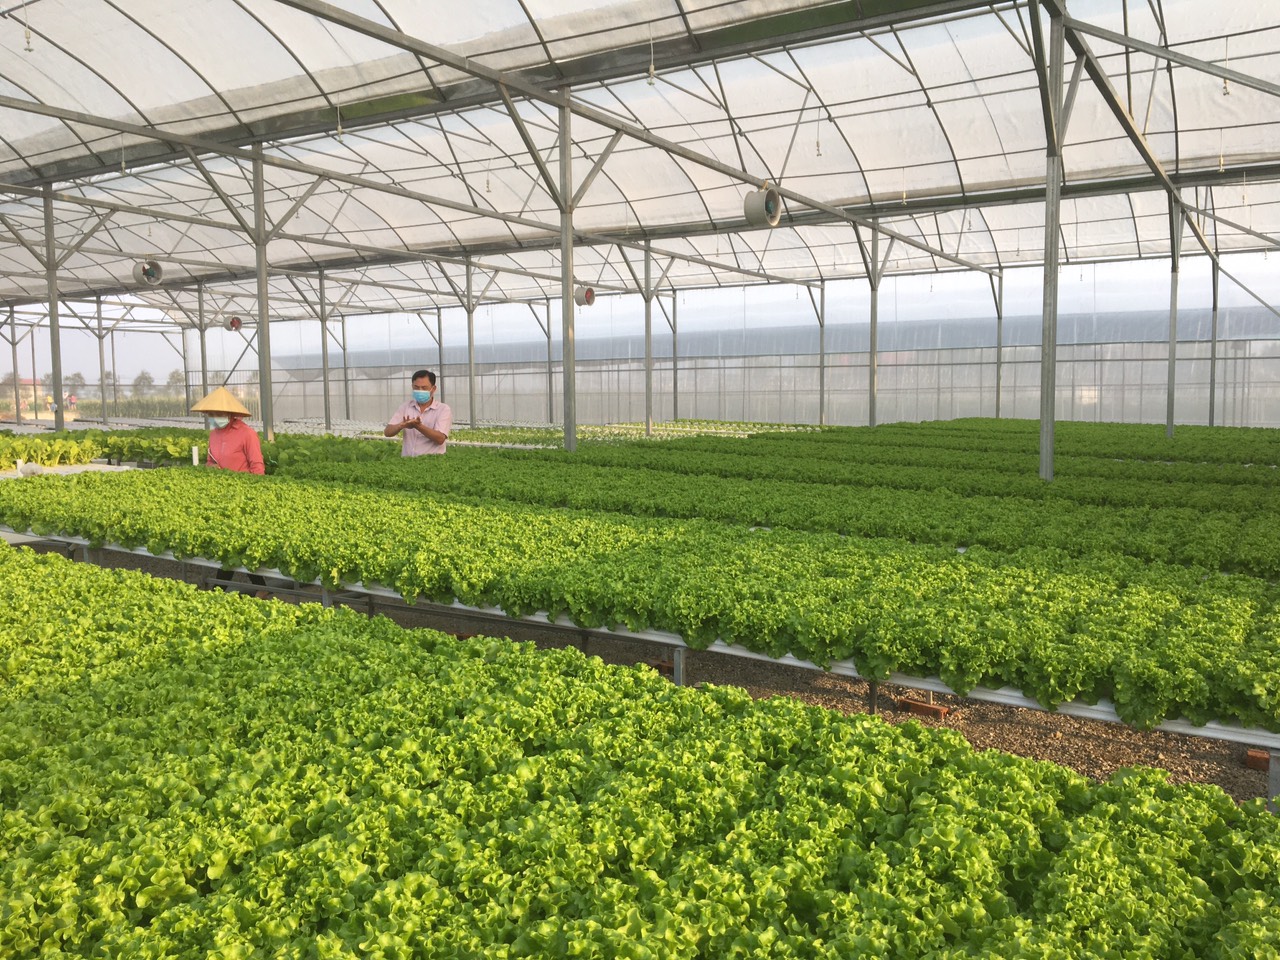 Sản phẩm rau thuỷ canh của hợp tác xã nông nghiệp Phú Lộc bước đầu cho hiệu quả kinh tế cao